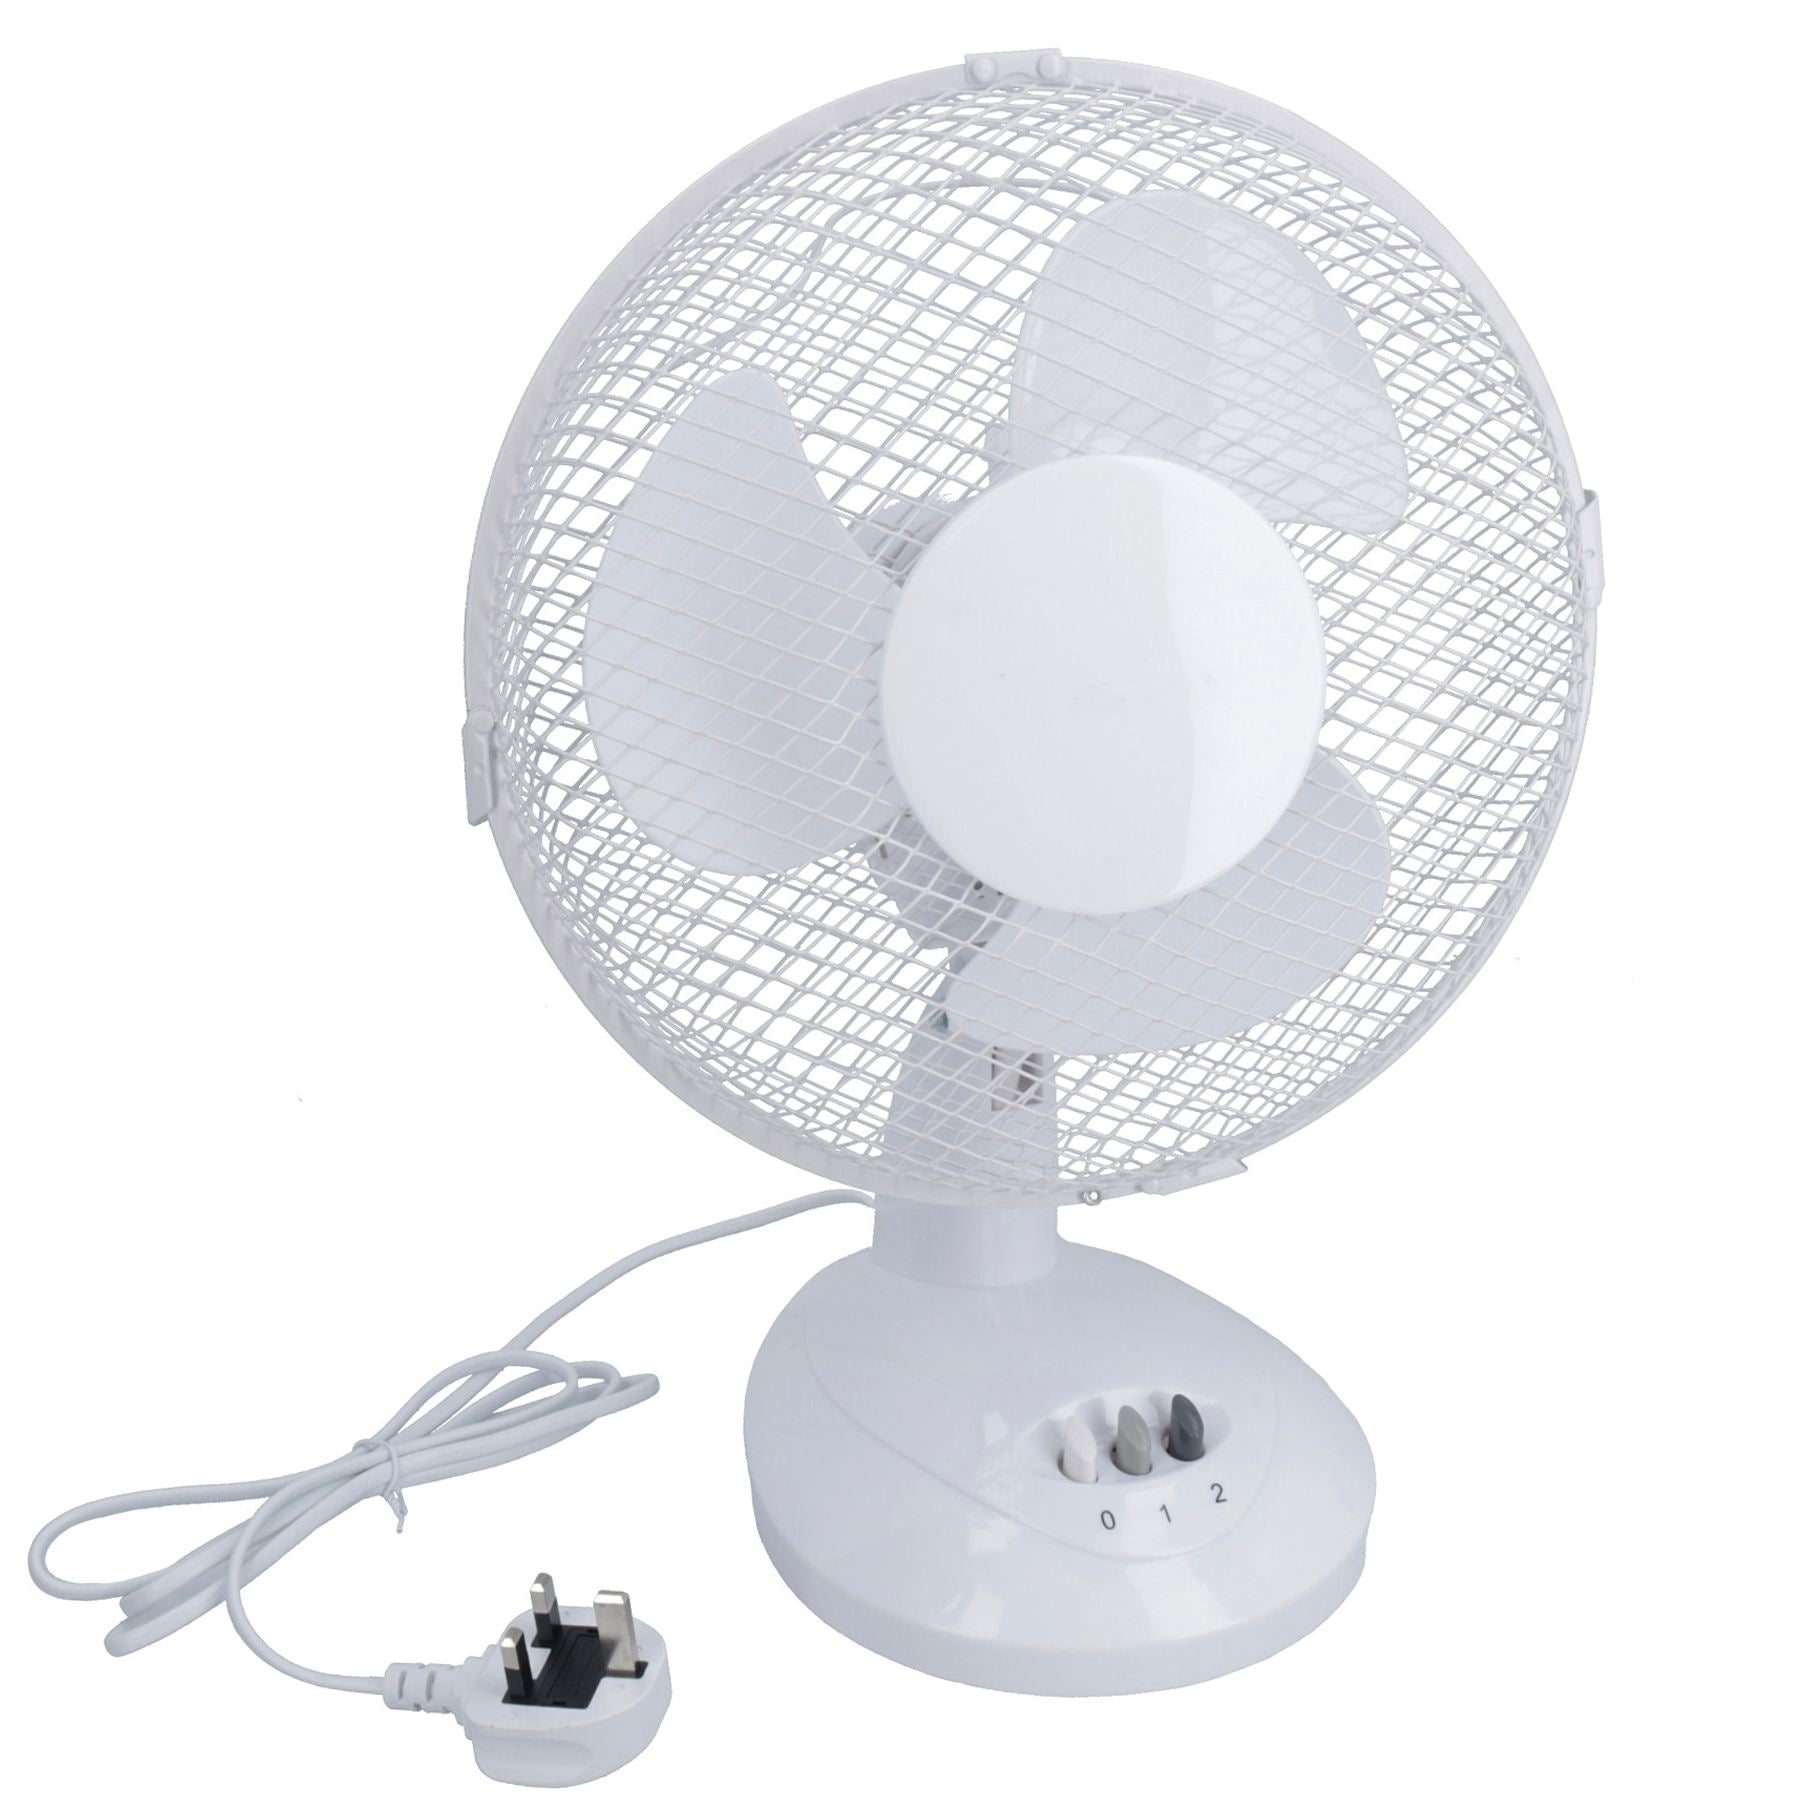 9” Oscillating Desk fan Portable Tilting Head Cooling 2 Speed Silent UK Plug